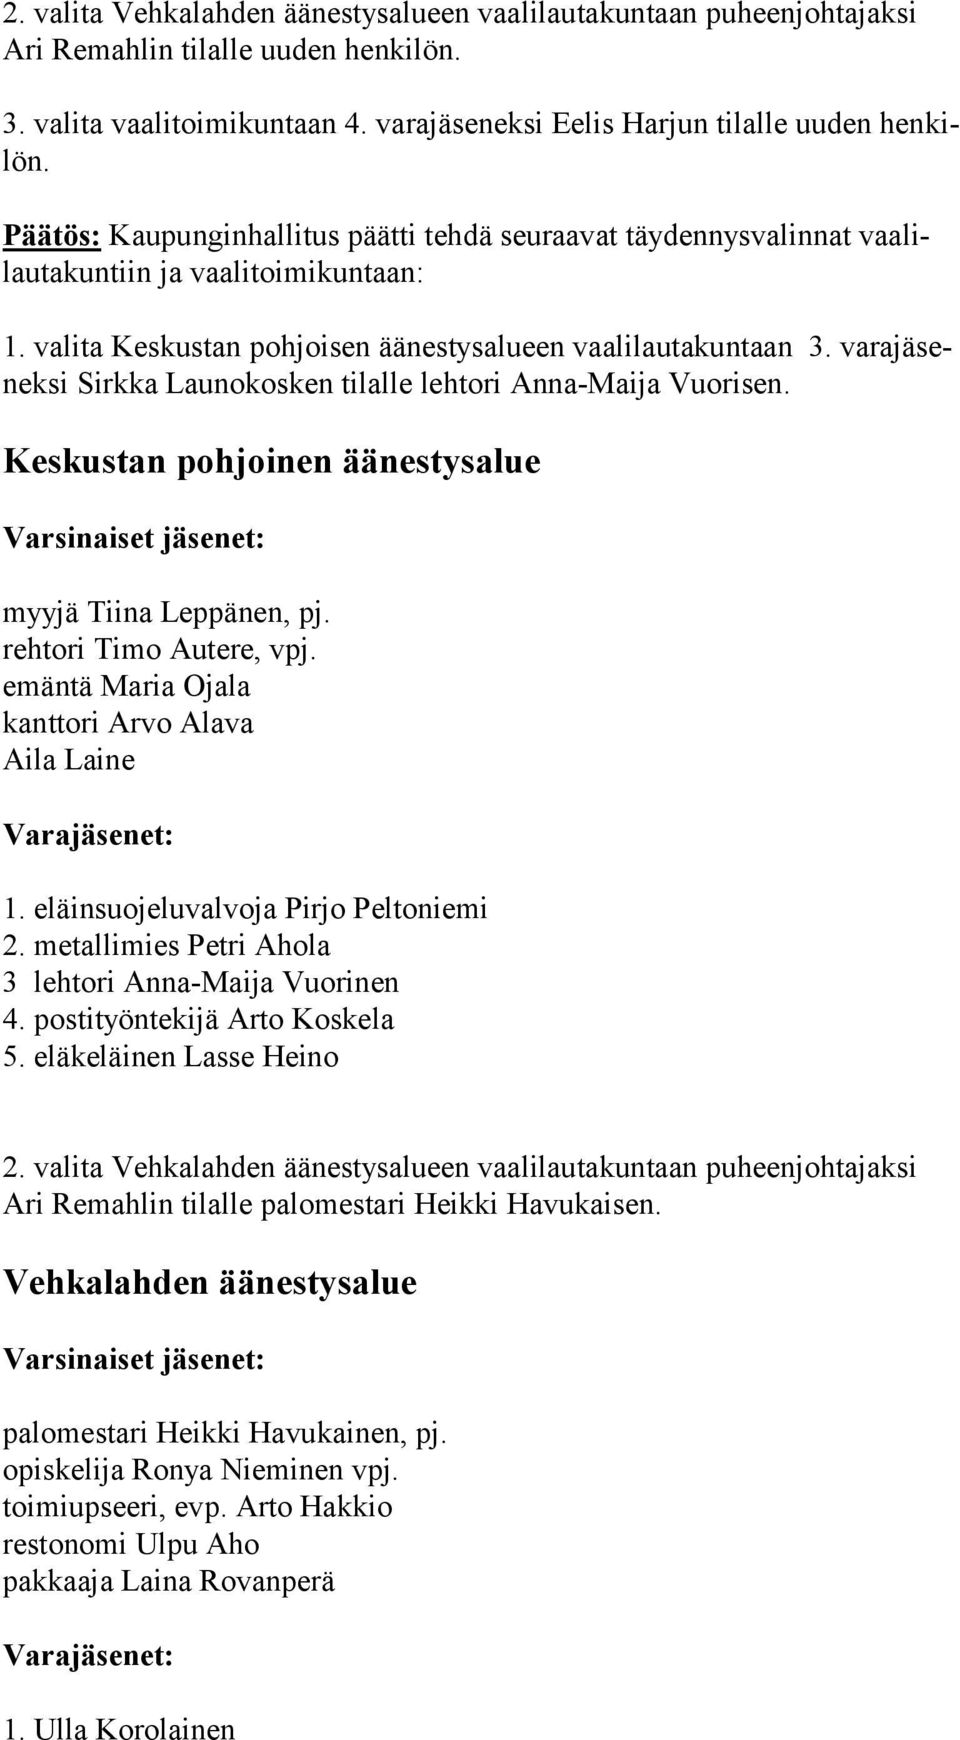 va ra jä senek si Sirkka Launokosken tilalle lehtori Anna-Maija Vuorisen. Keskustan pohjoinen äänestysalue myyjä Tiina Leppänen, pj. rehtori Timo Autere, vpj.